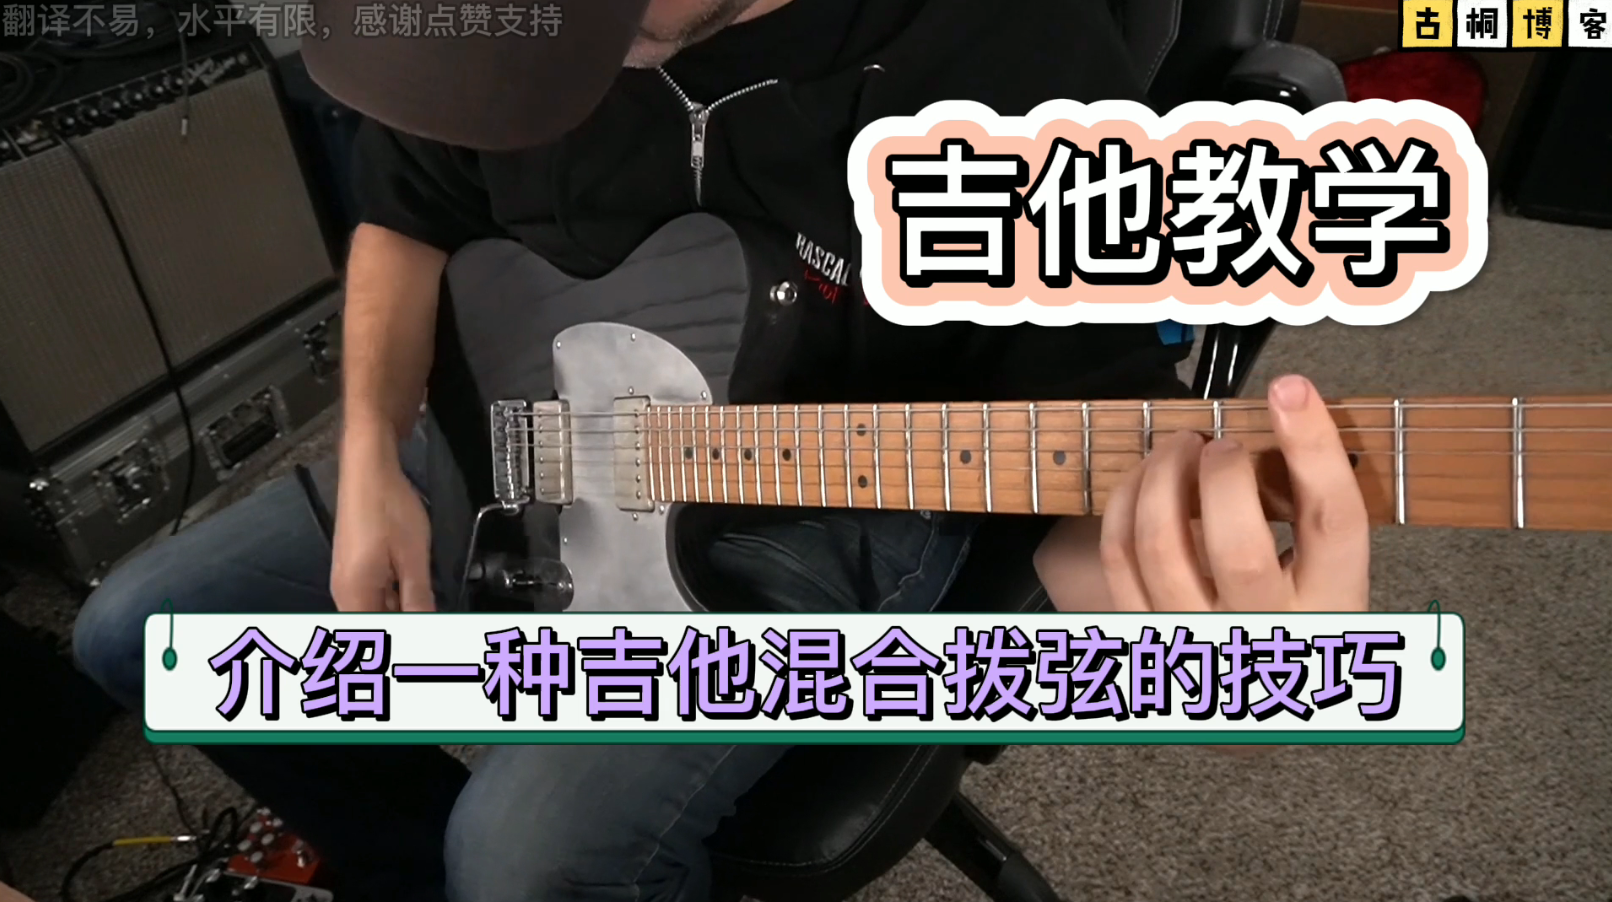 吉他教学 | 介绍一种吉他混合拨弦的技巧《中文字幕》-古桐博客